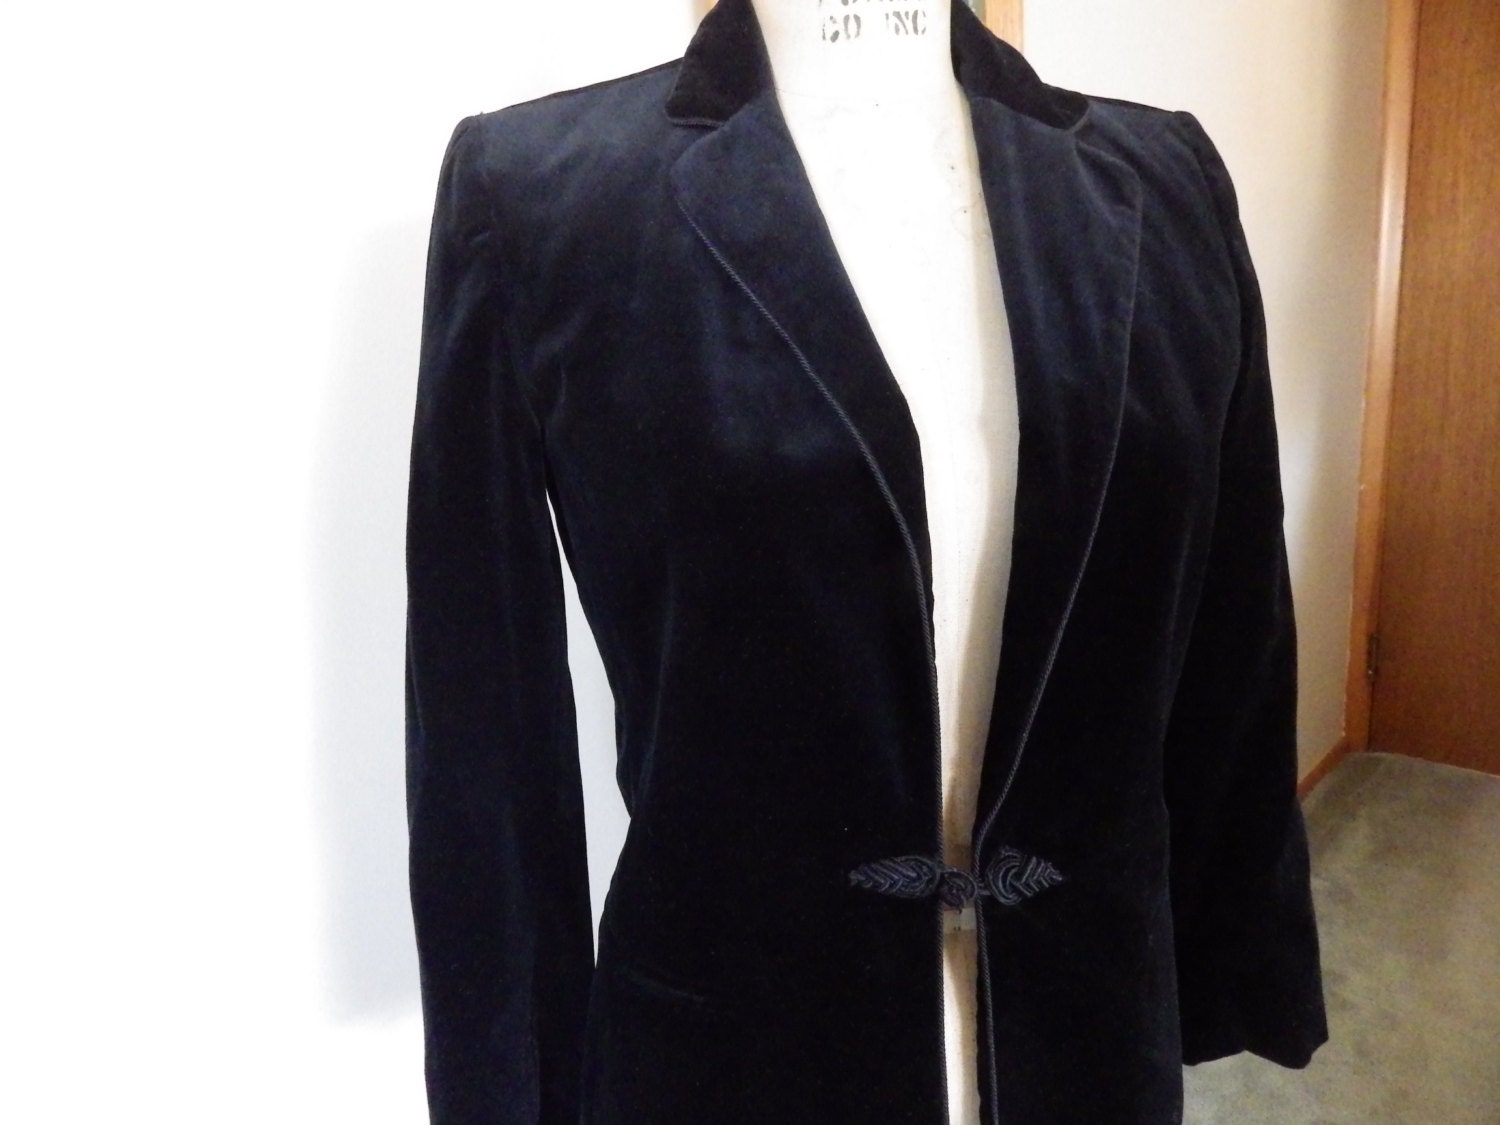 Stunning vintage velvet fitted women's jacket 1940s/50s